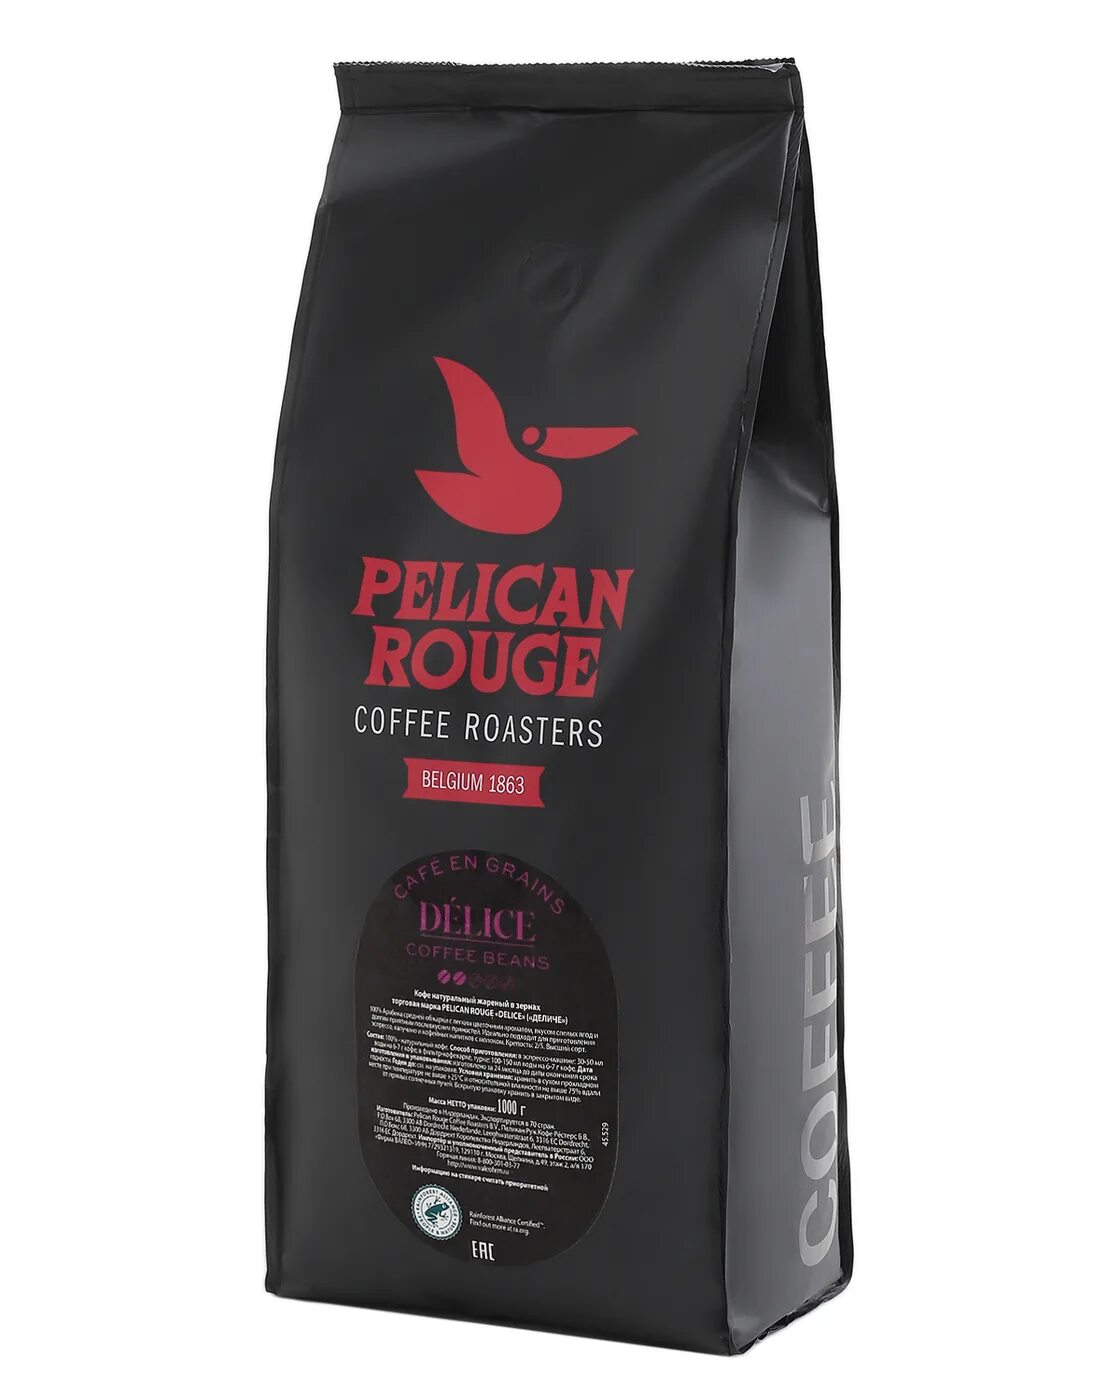 Кофе в зернах купить в нижнем. Кофе в зернах Pelican rouge Delice. Кофе в зернах Pelican rouge Evaristo. Кофе в зернах Pelican rouge Delice 1 кг. Кофе в зернах Pelican rouge Evaristo, 1 кг.